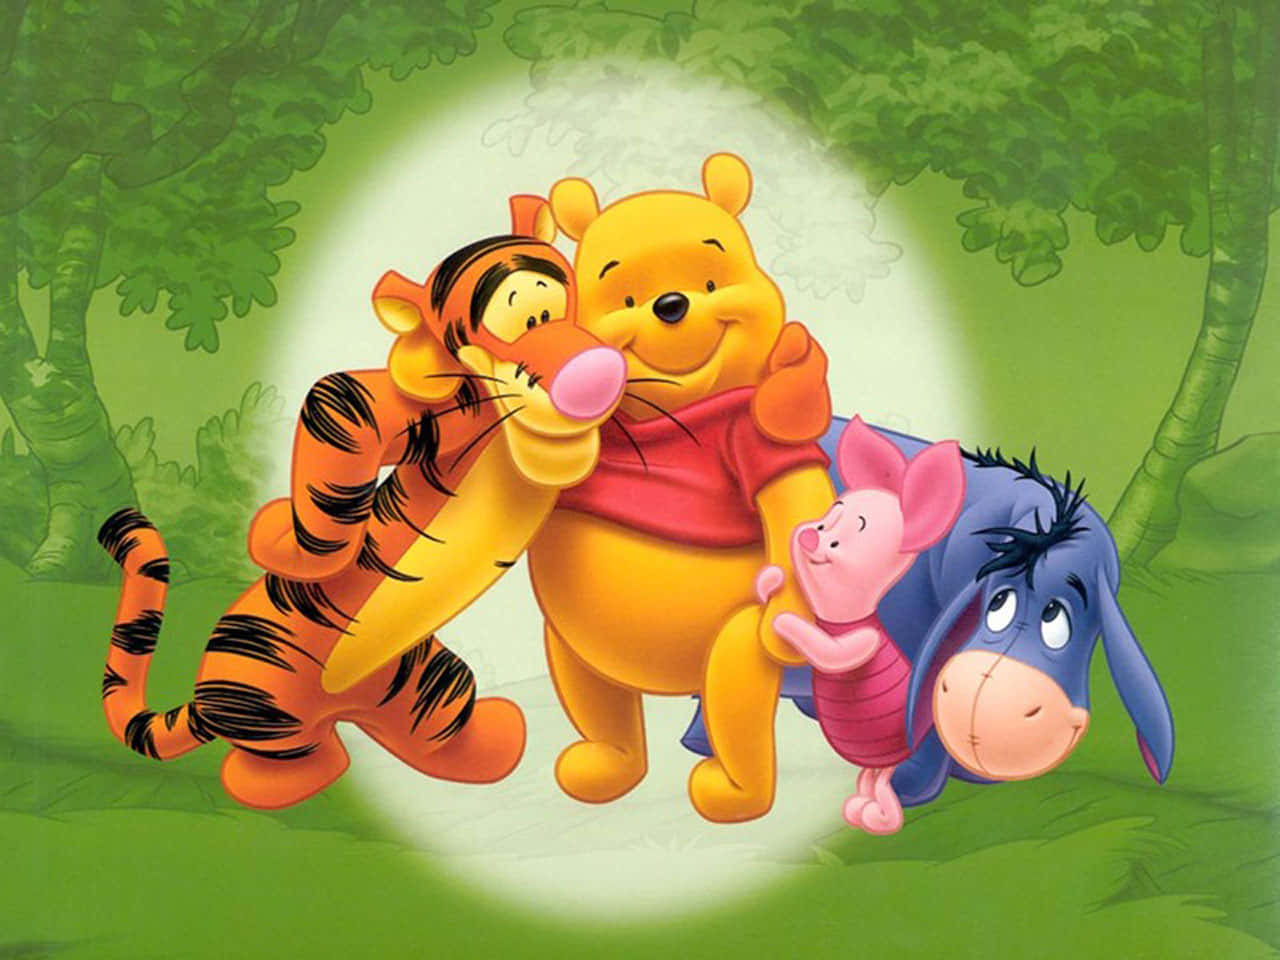 Nyd en fredelig dag i skoven med den elskede Winnie the Pooh. Wallpaper